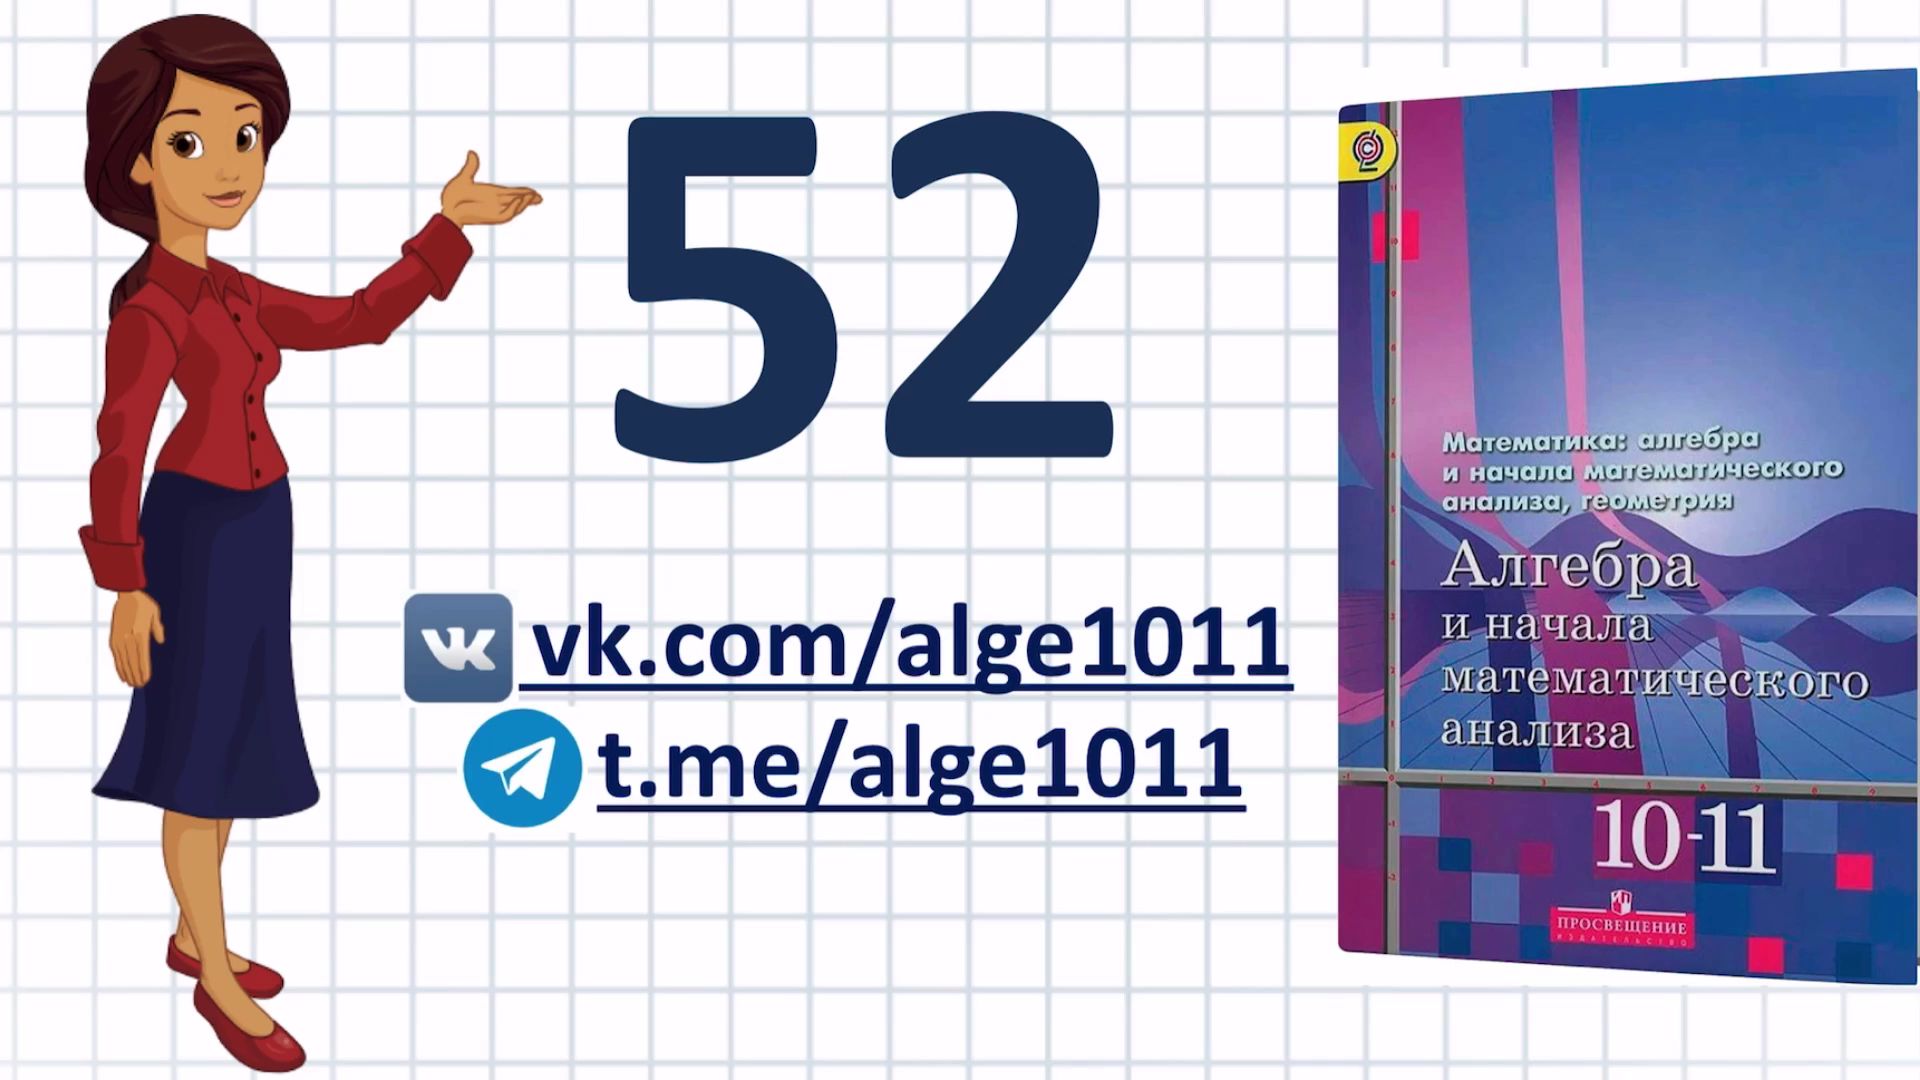 Видеоразбор № 52 из учебника Алимова «Алгебра 10-11 класс»